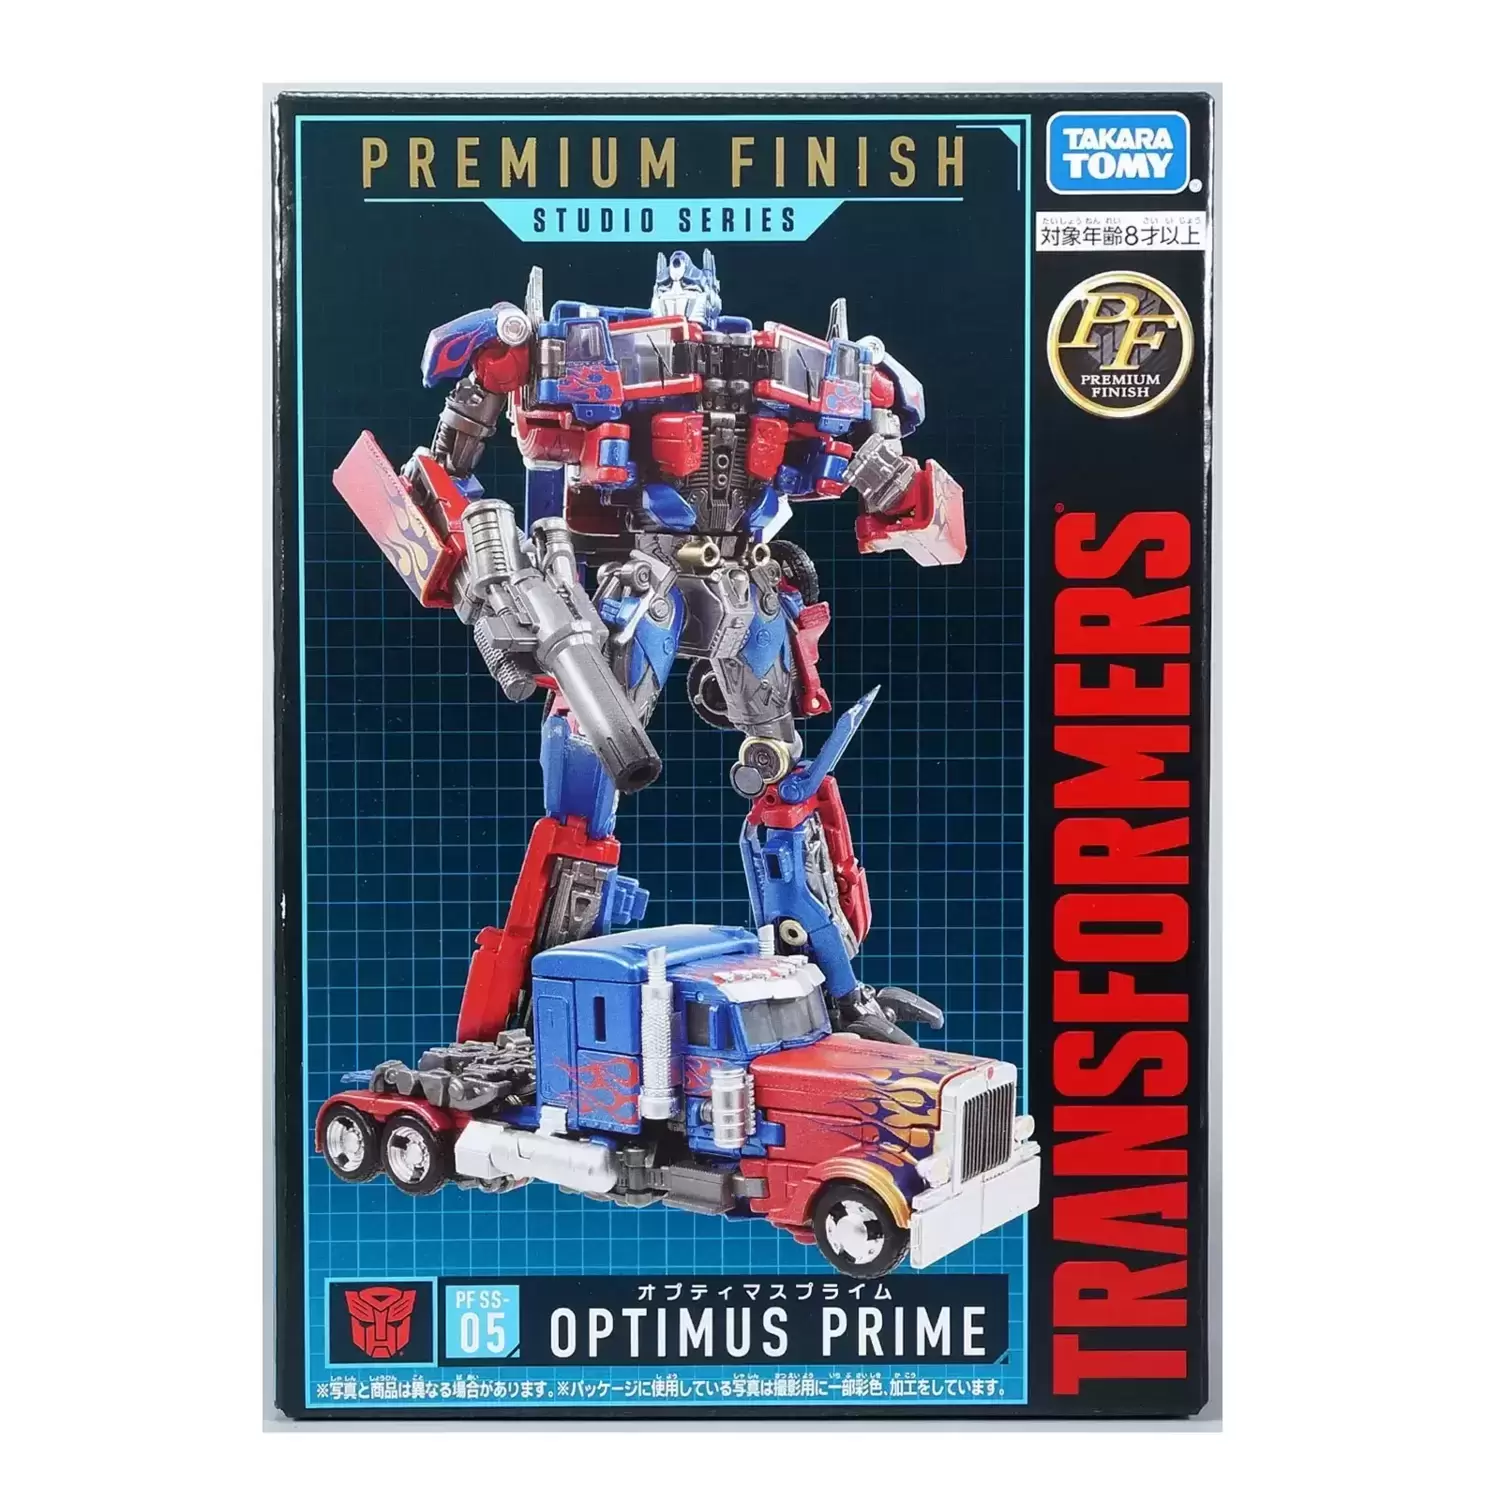 Transformers Studio Series - Optimus Prime Premium Finish